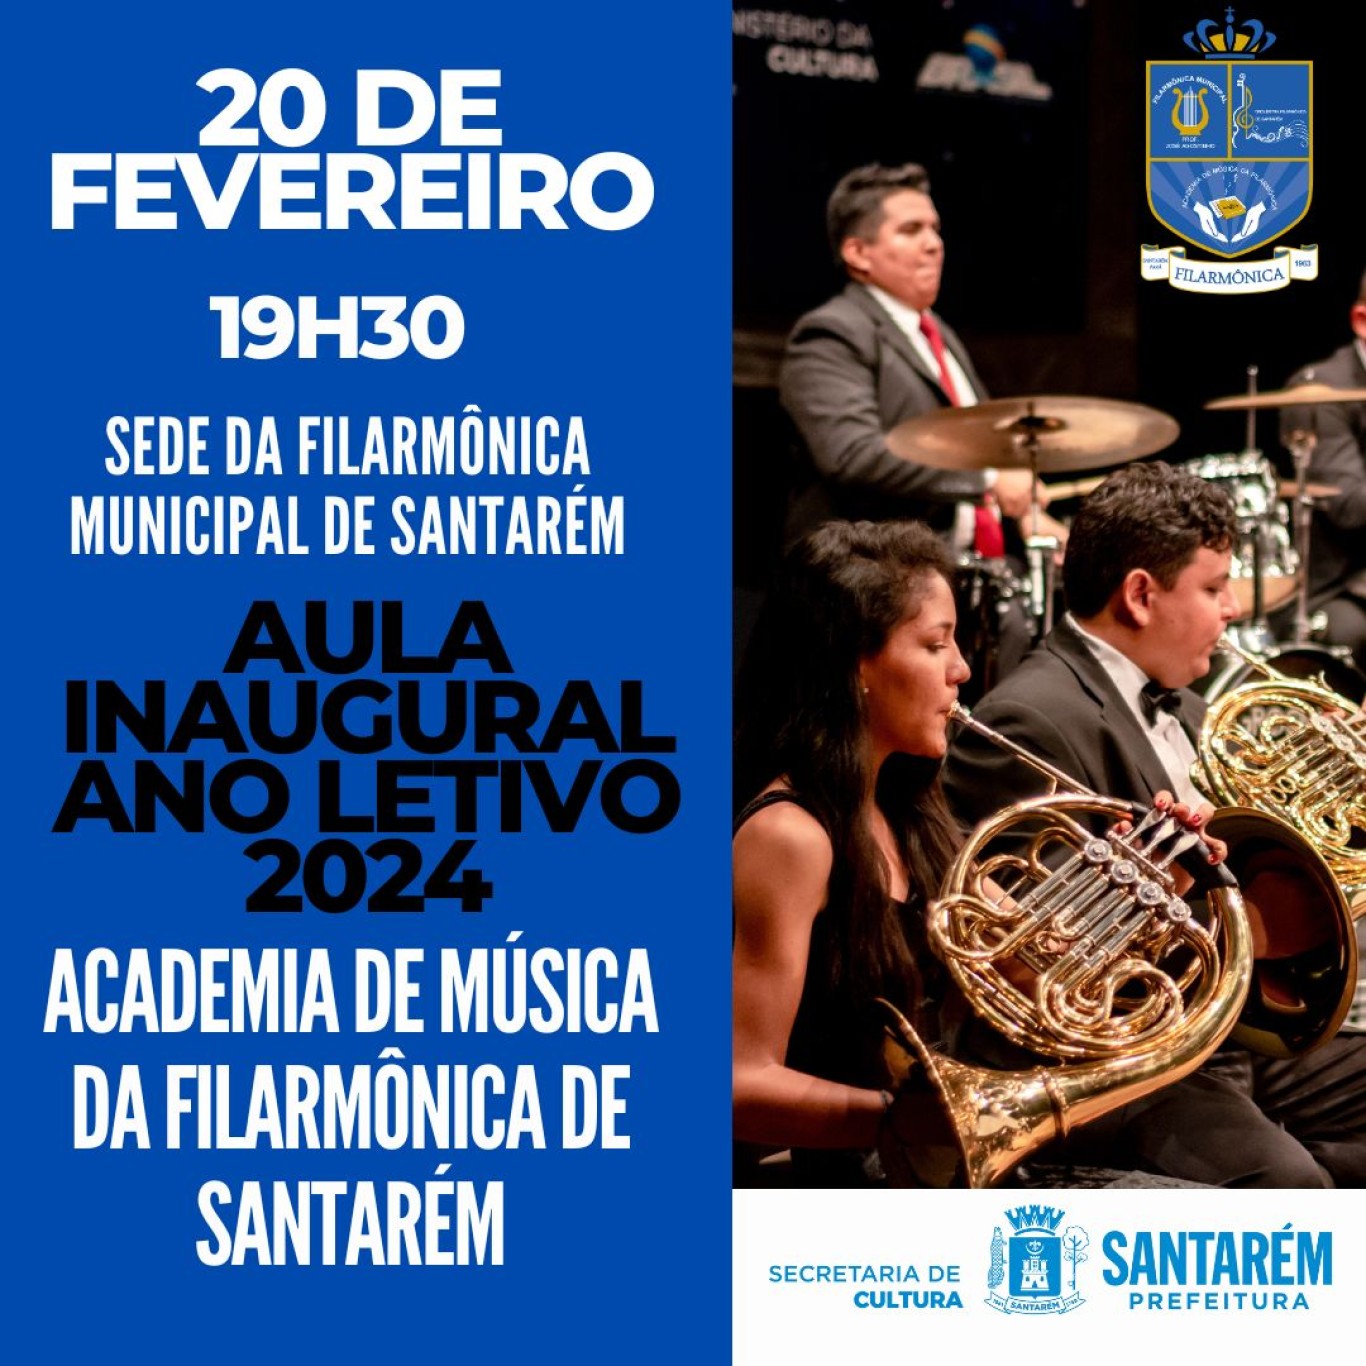 Aula inaugural da Academia de Música da Filarmônica Municipal de Santarém será nesta terça (20) 